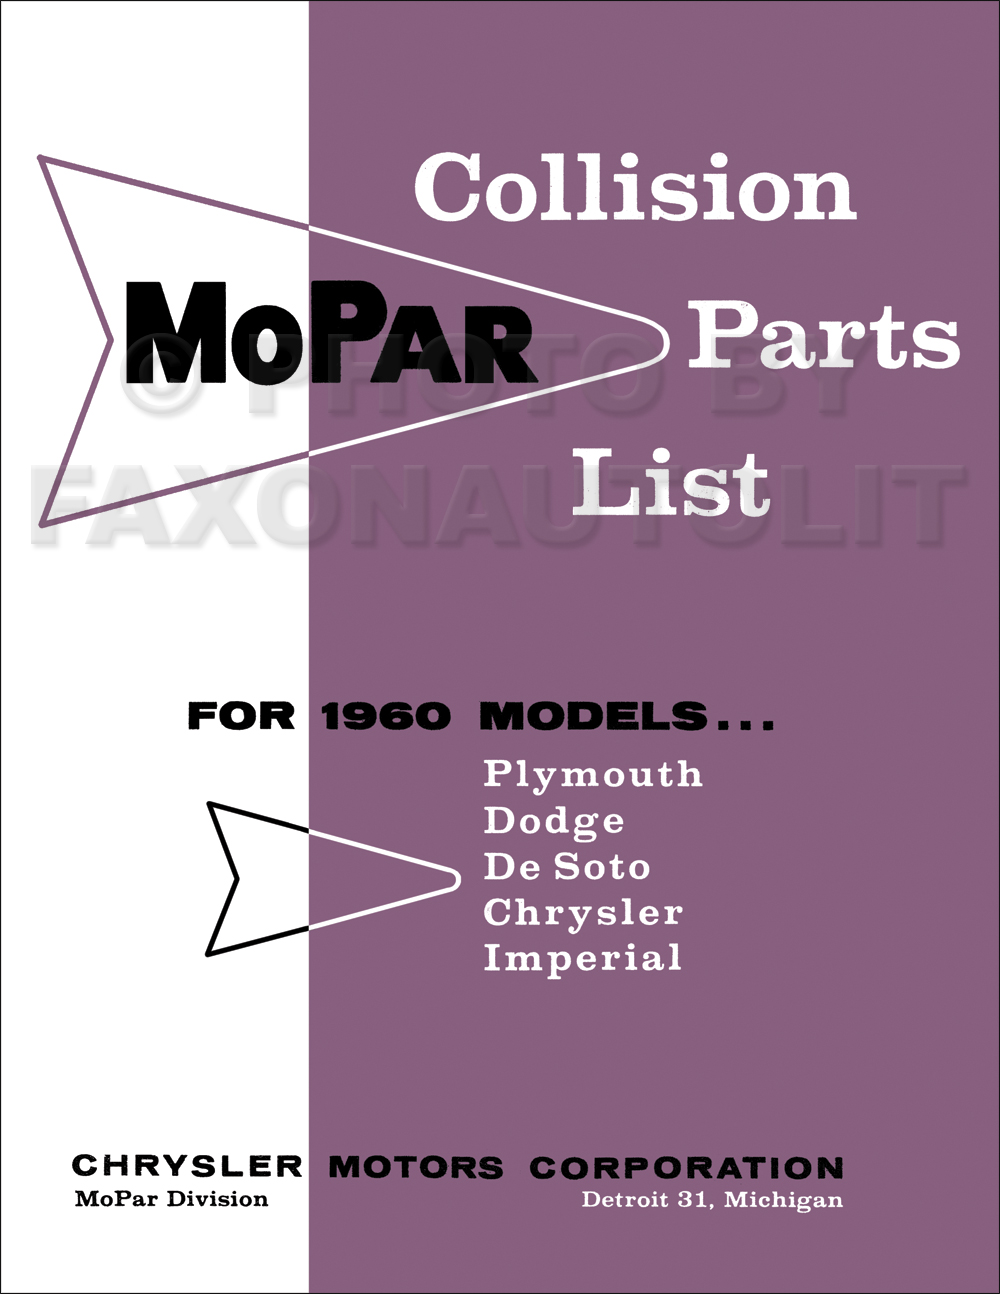 1960 MoPar Collision Parts Book Reprint